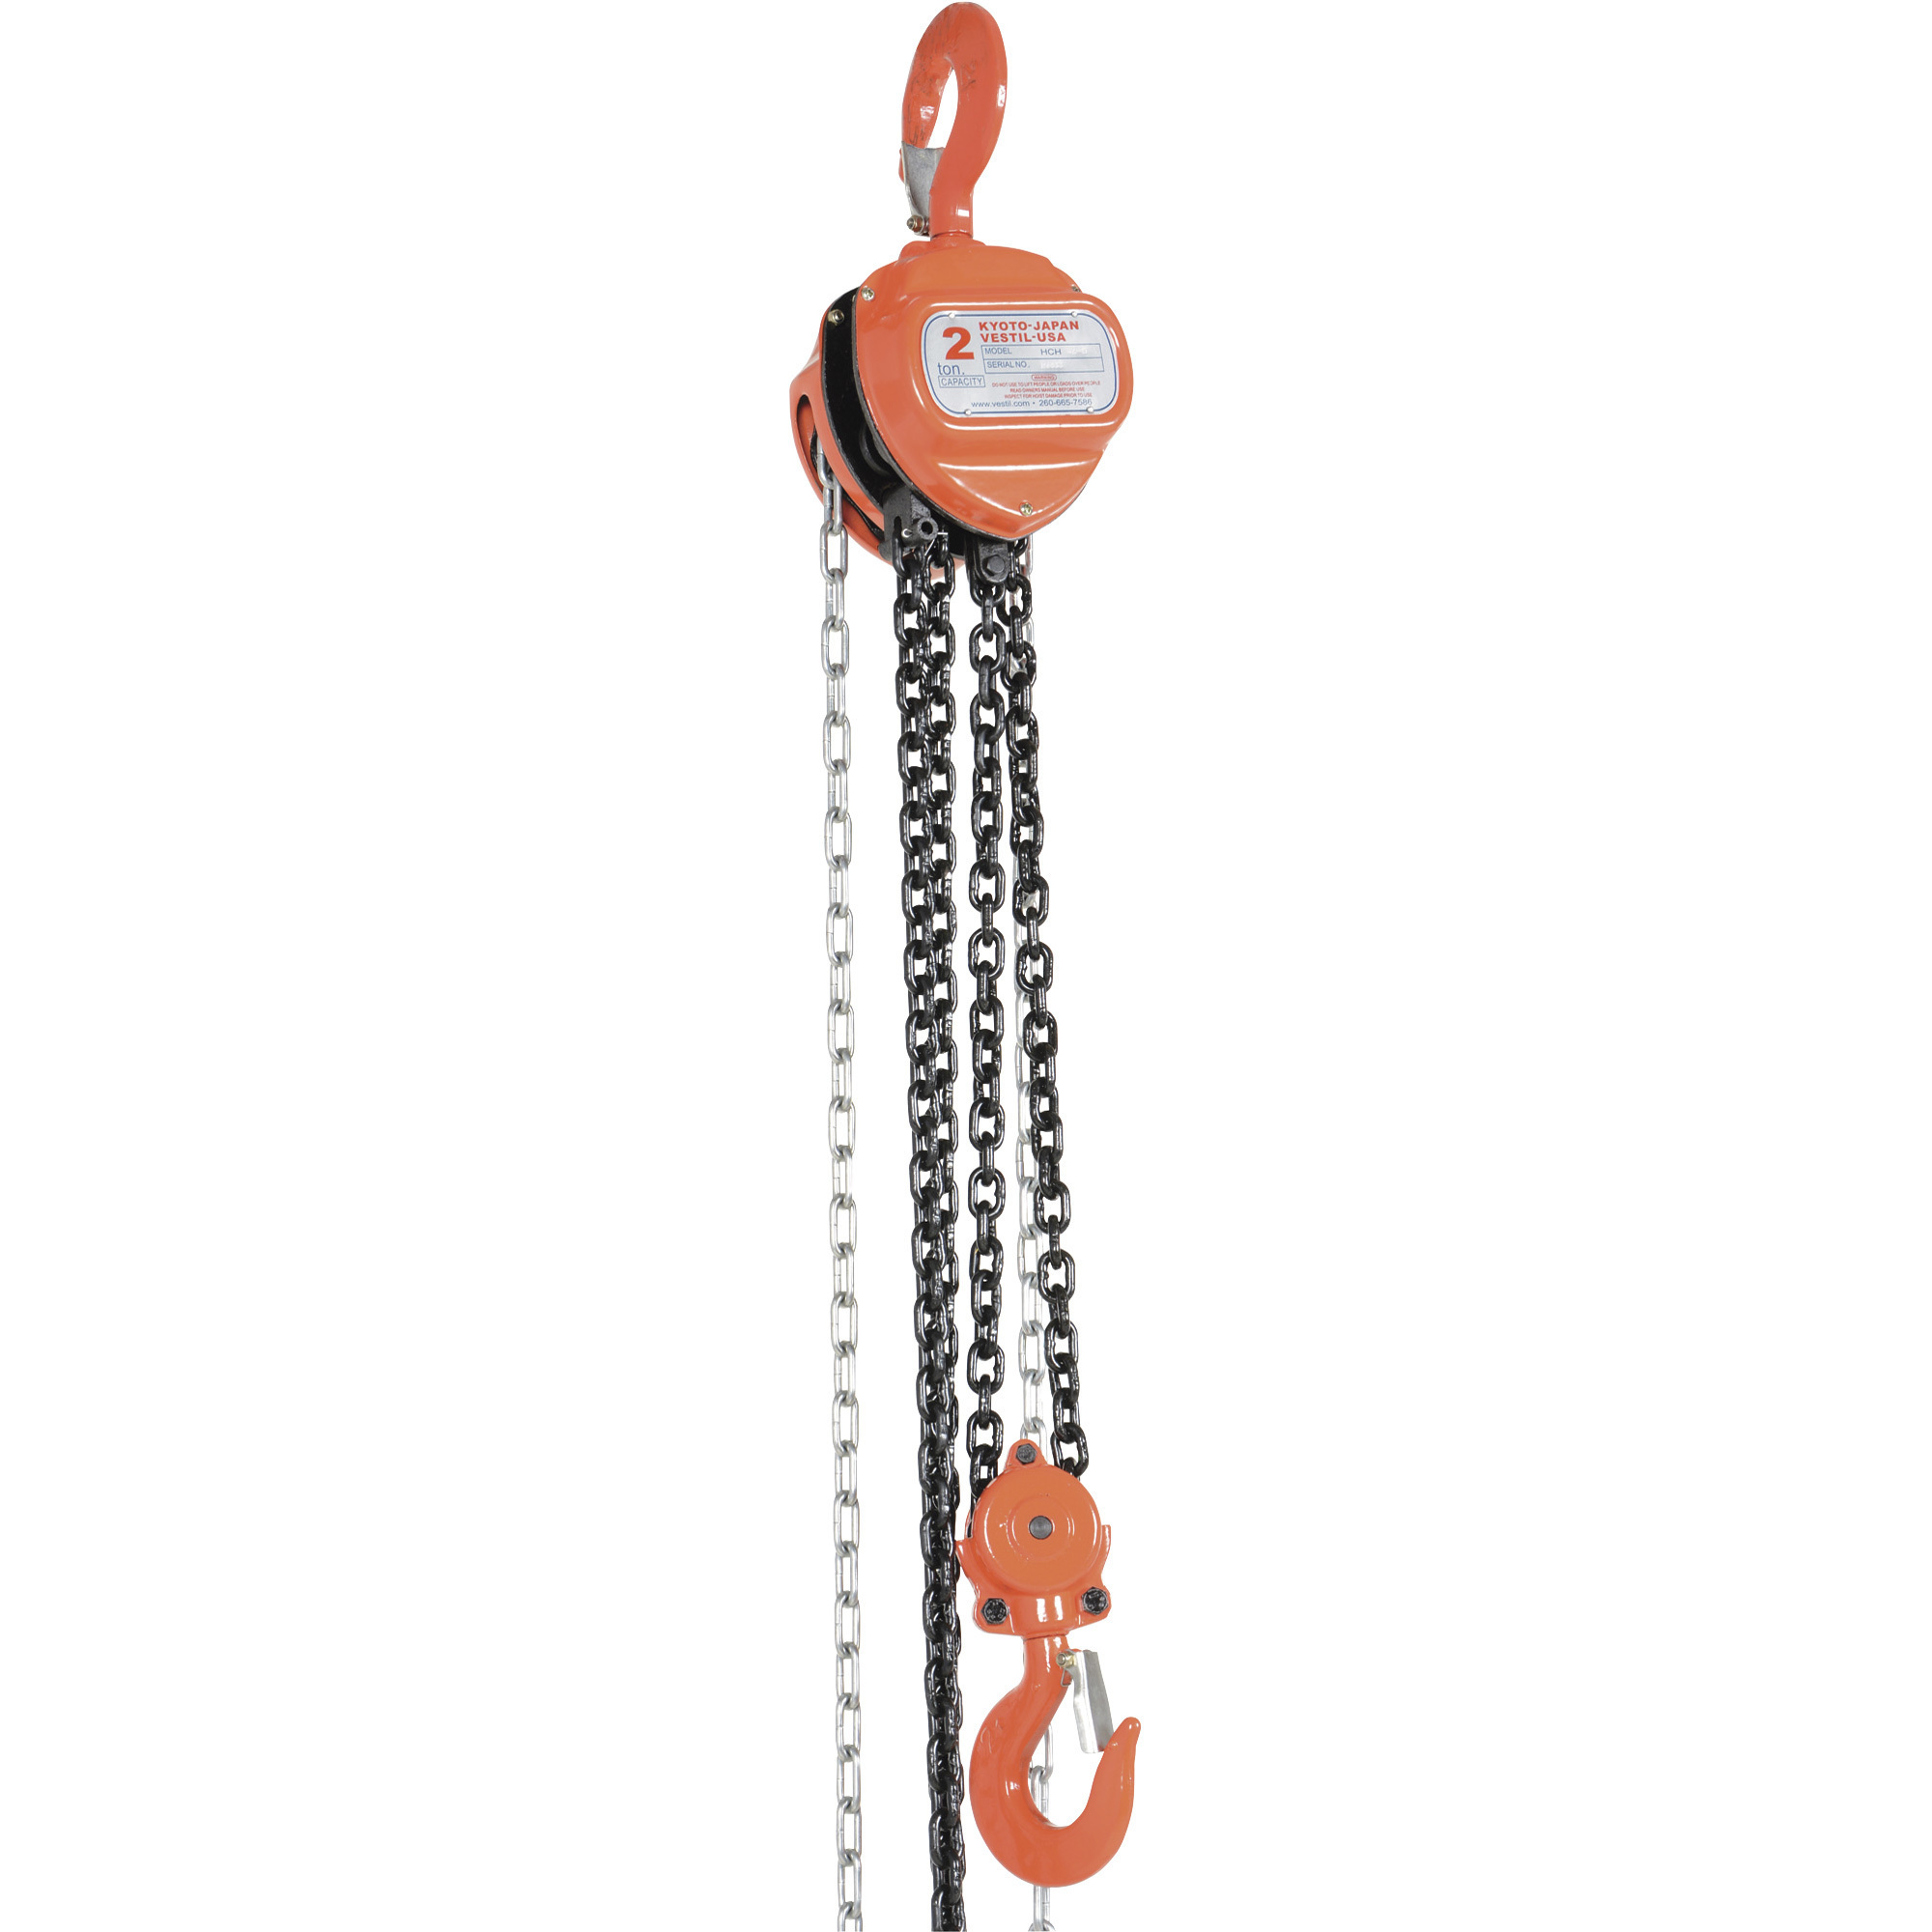 Hand Chain Hoist — 2-Ton Lift Capacity, Model - Vestil HCH-4-15